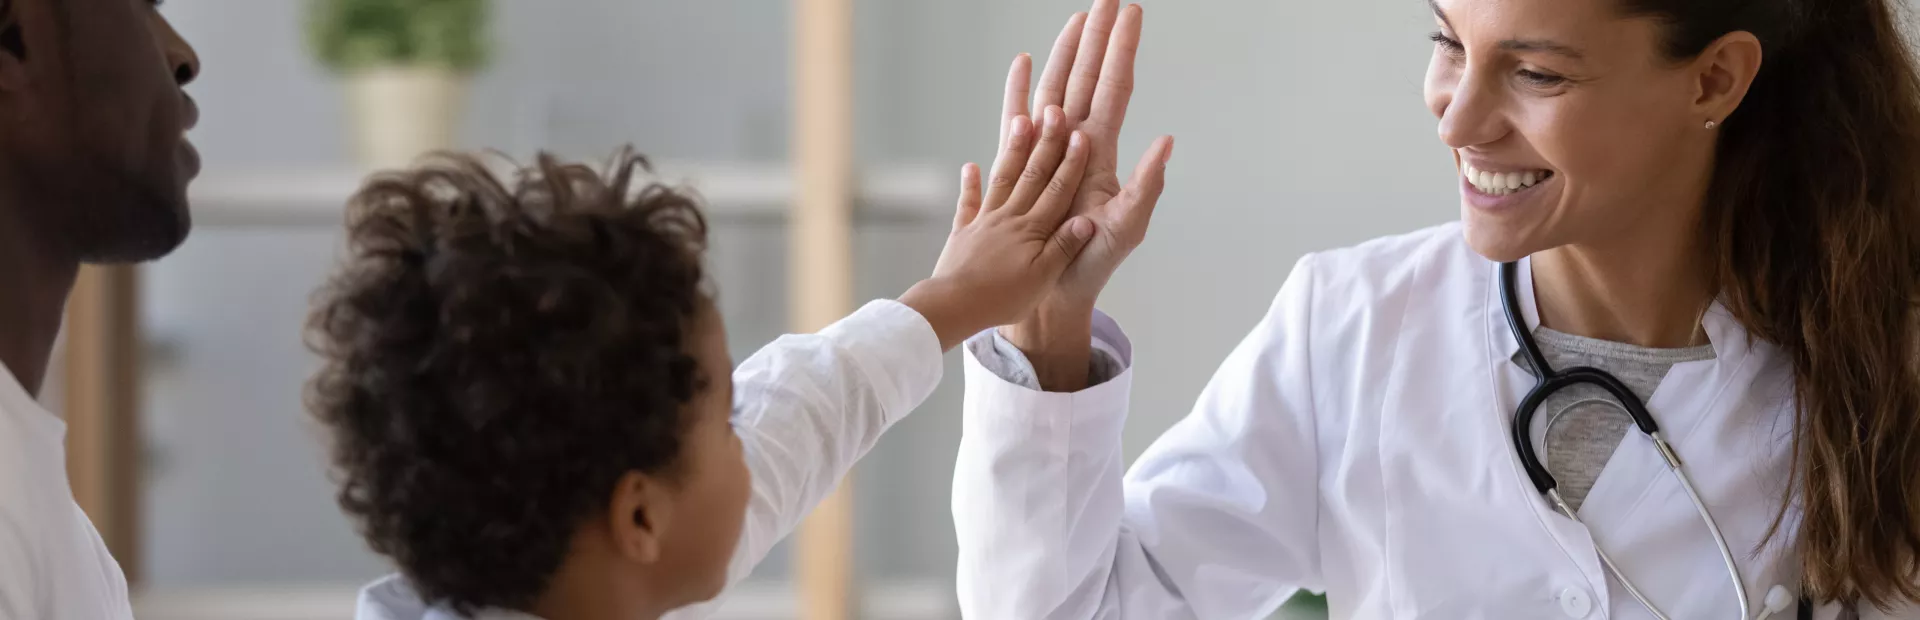 Un niño chocando la mano con su doctora